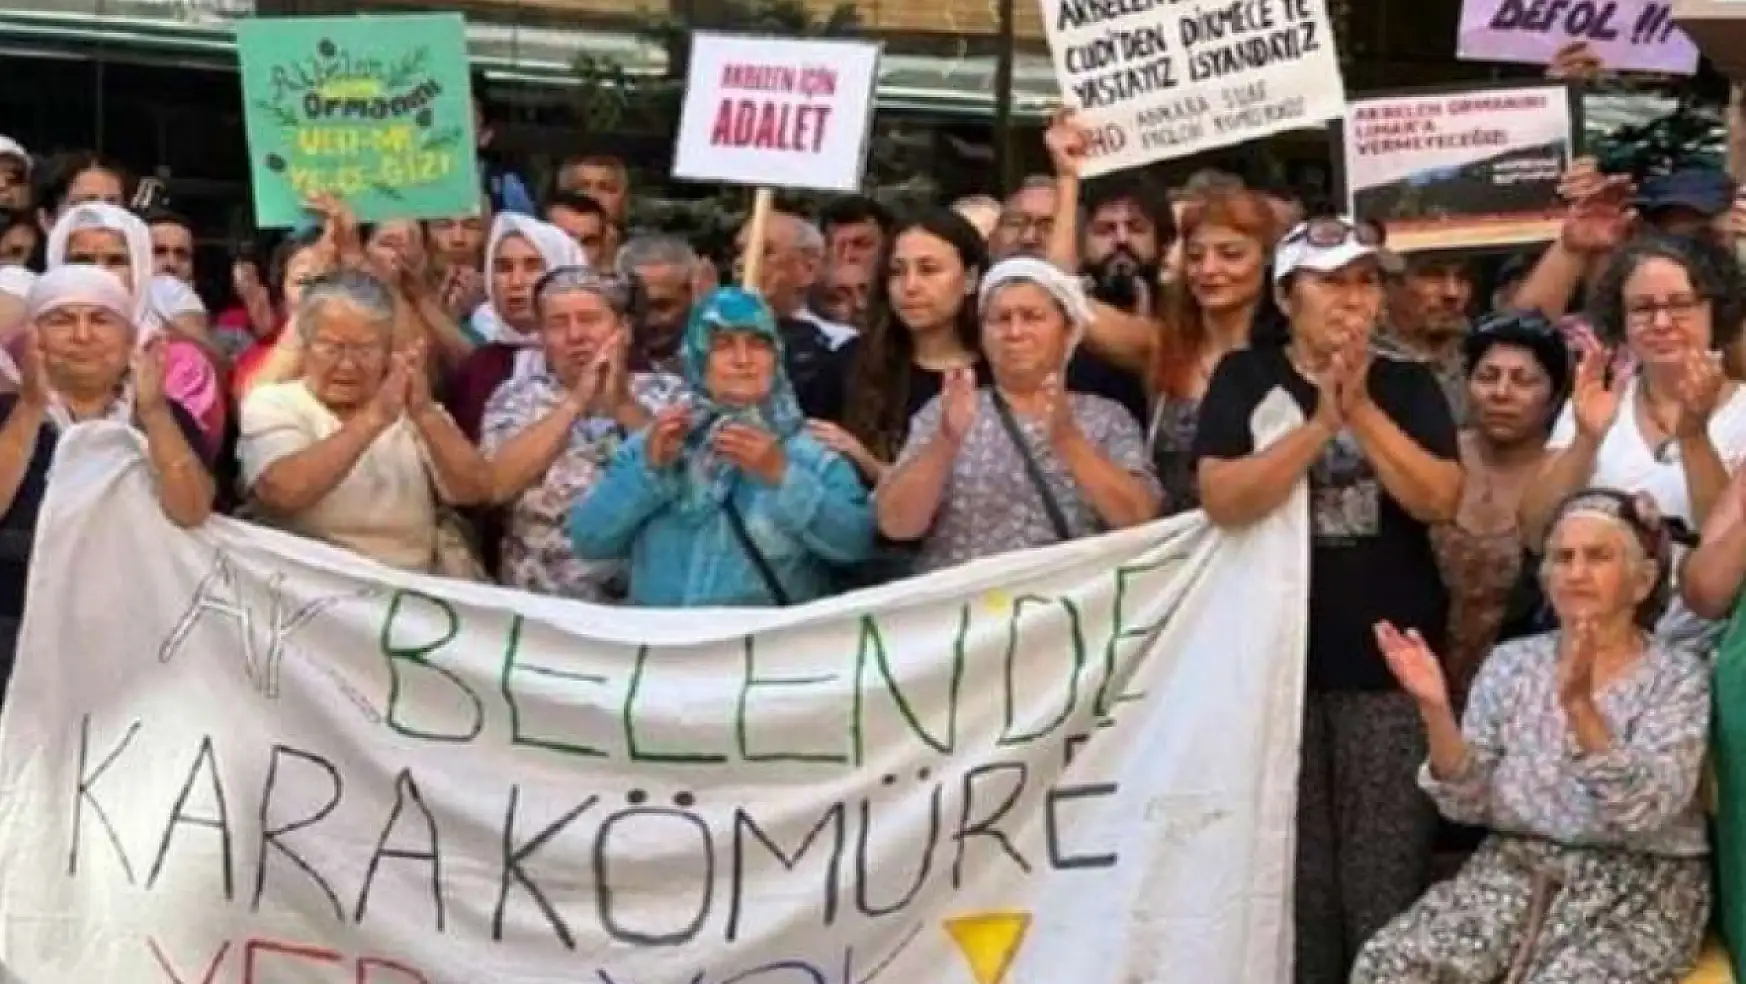 Akbelen için direnen İkizköylüler Ankara'ya gitti